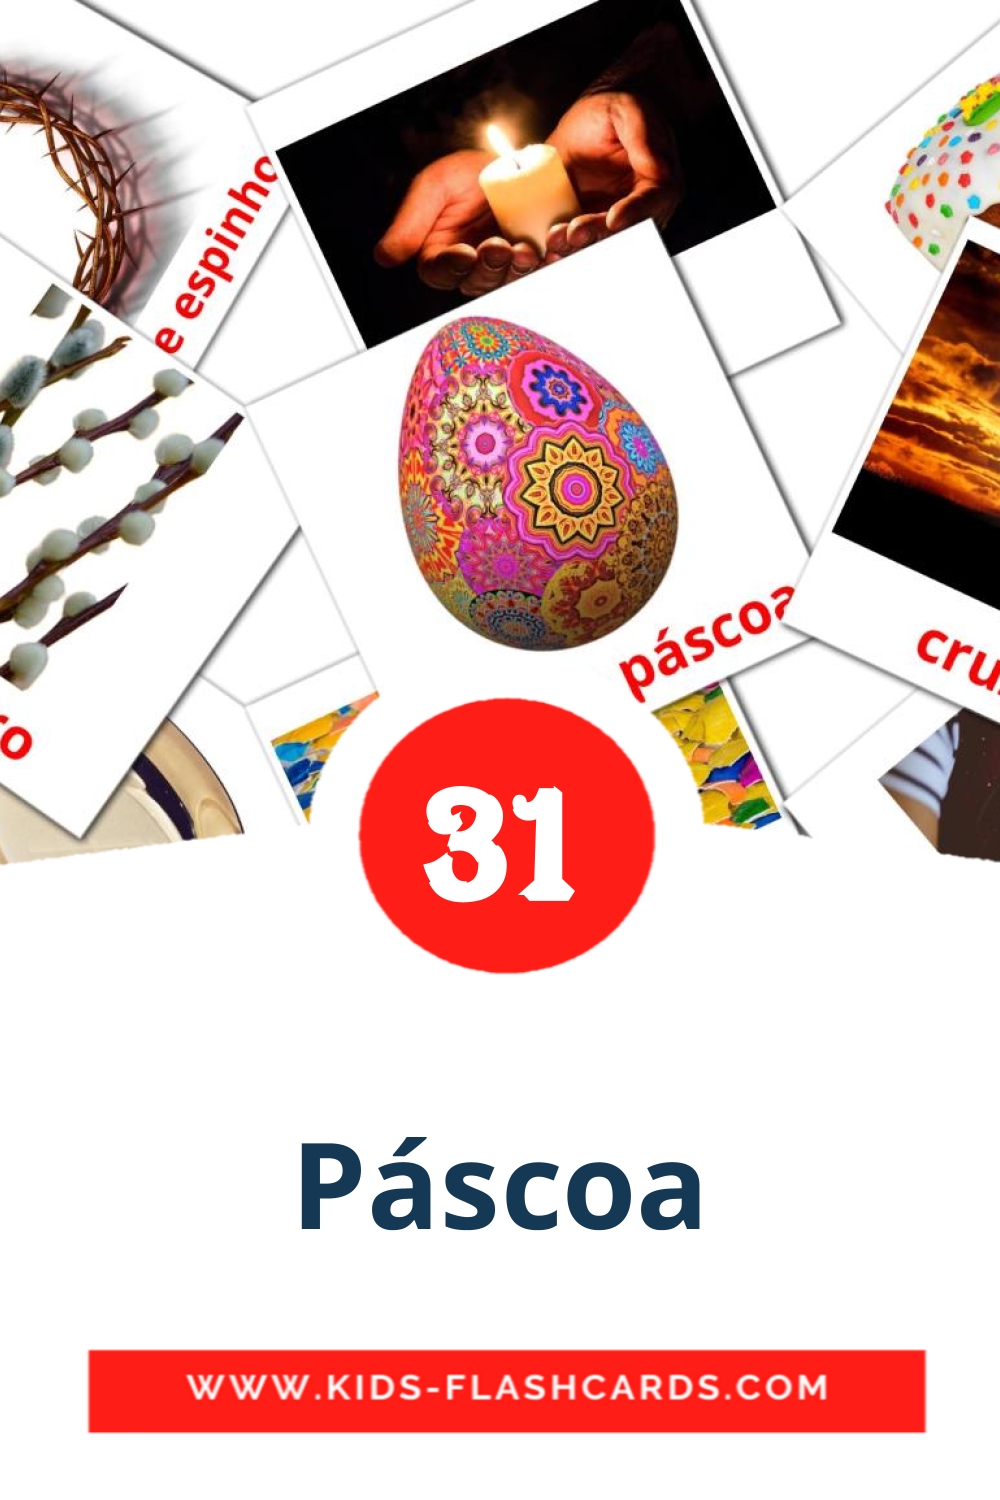 31 carte illustrate di Páscoa per la scuola materna in portoghese